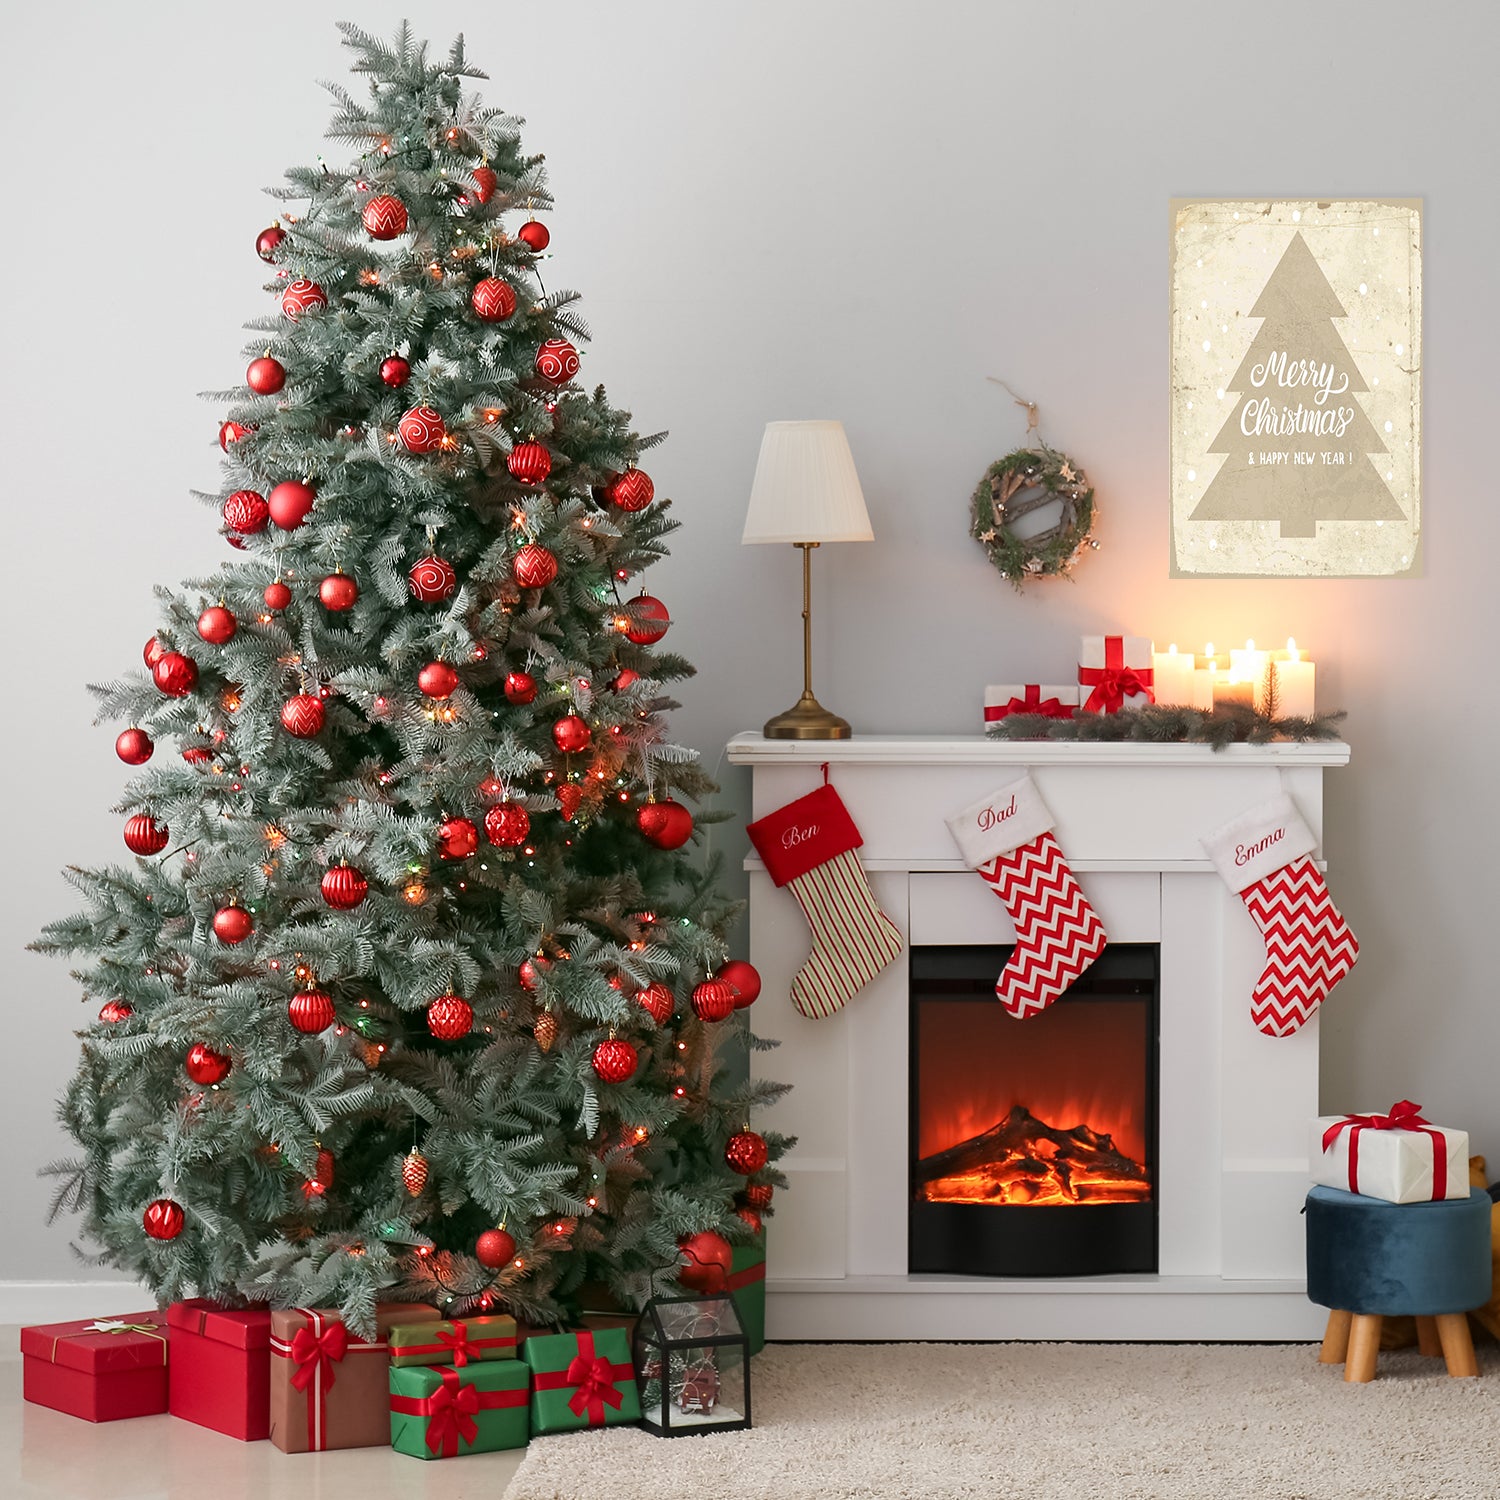 Blechschild - Merry Christmas Tree Wohnbeispiel